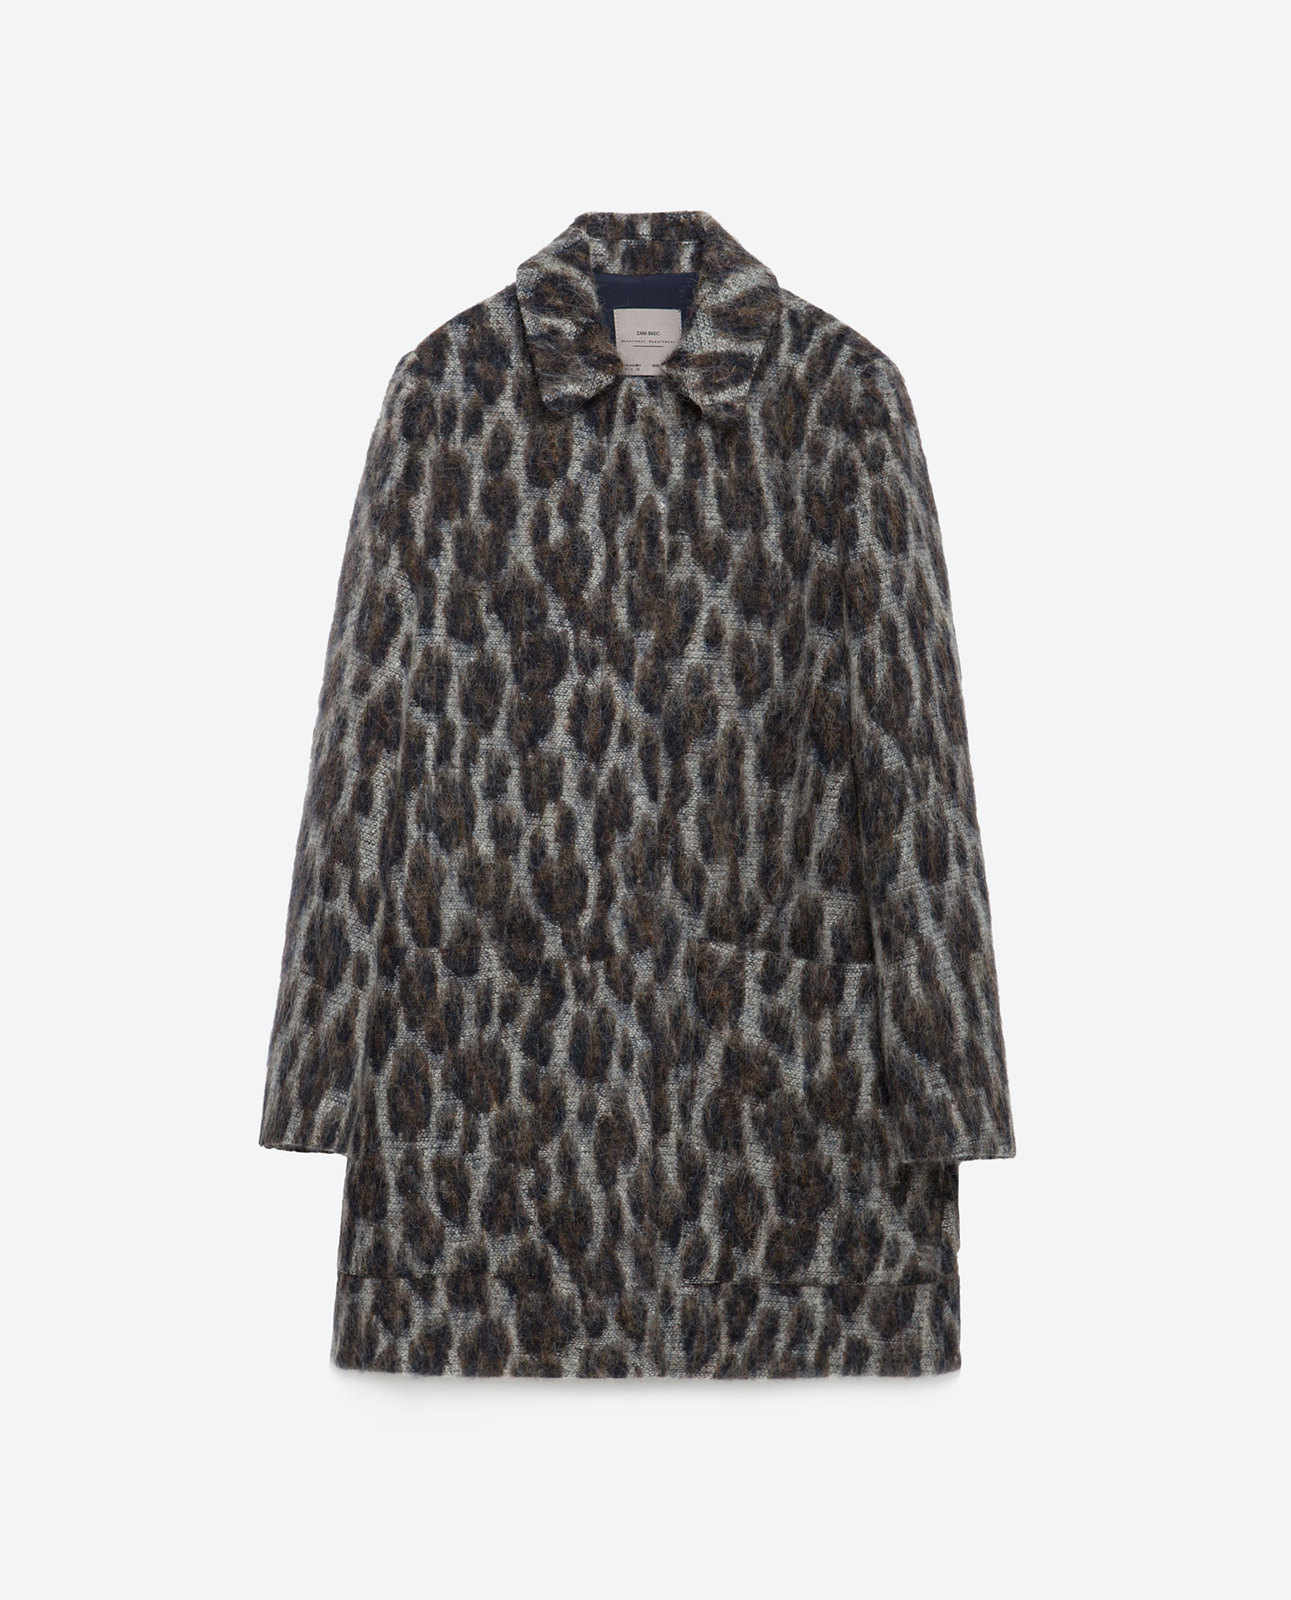 Zara mintás alpaka női kabát 2015.10.15 #88645 fotója